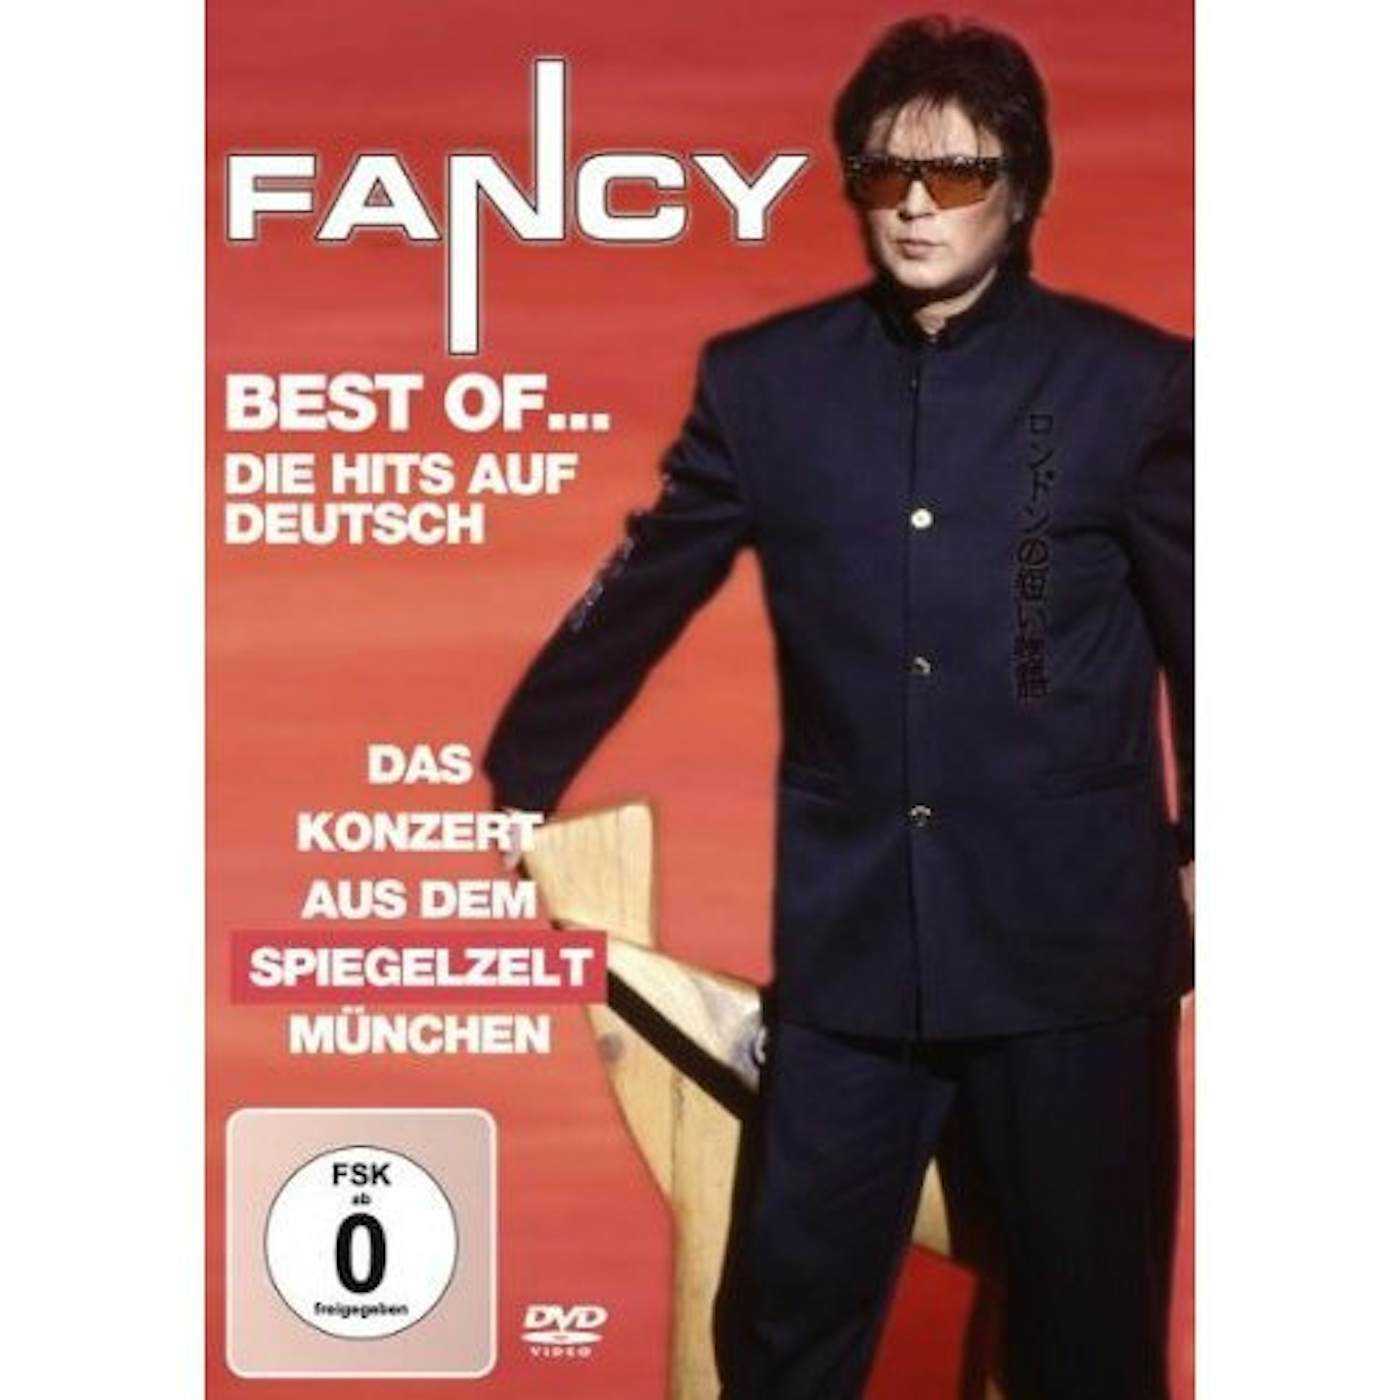 Fancy BEST OF-DIE HITS AUF DEUTSCH LIVE DVD